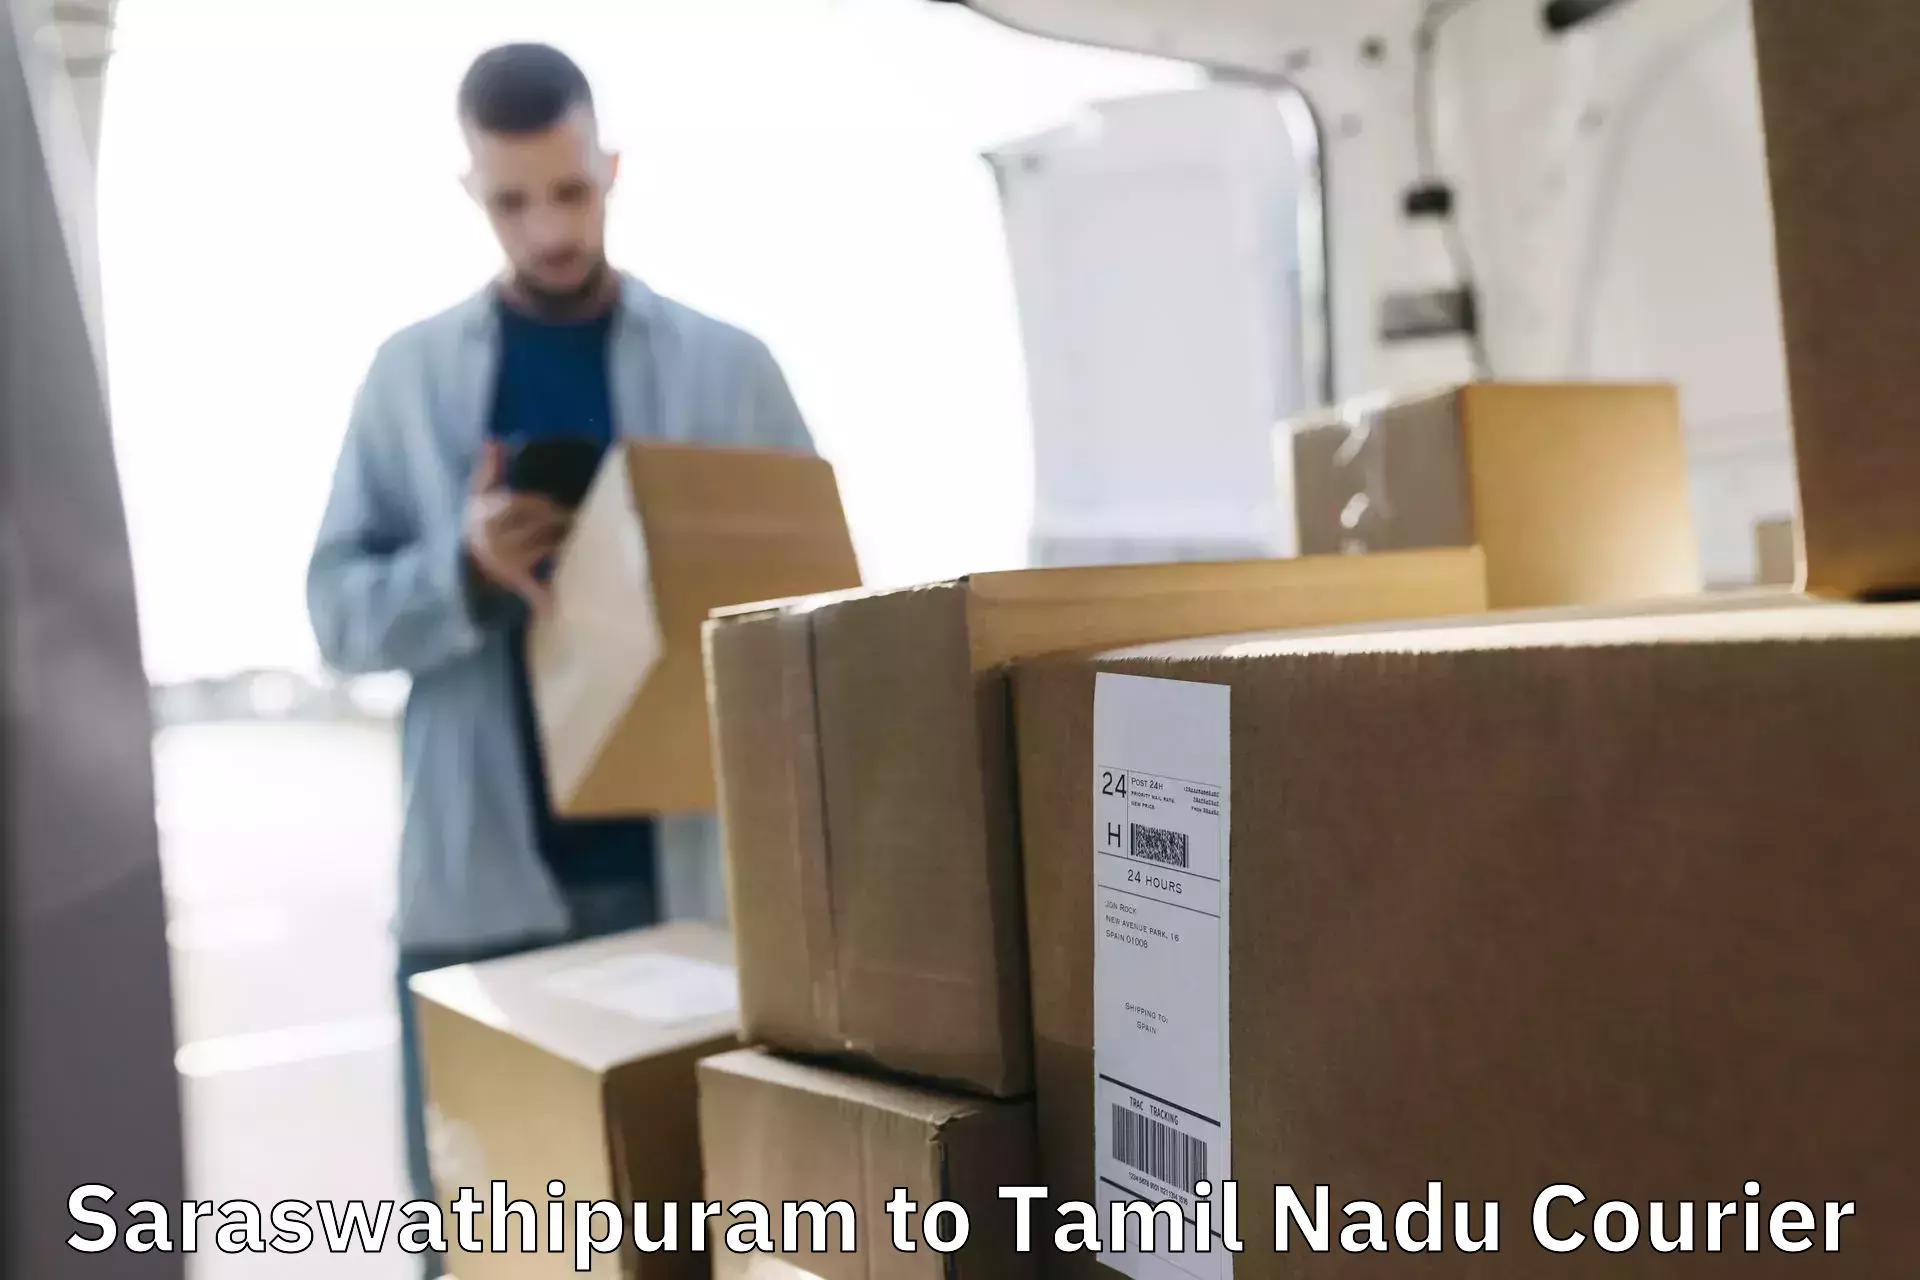 Fragile item shipping Saraswathipuram to Vellore Institute of Technology